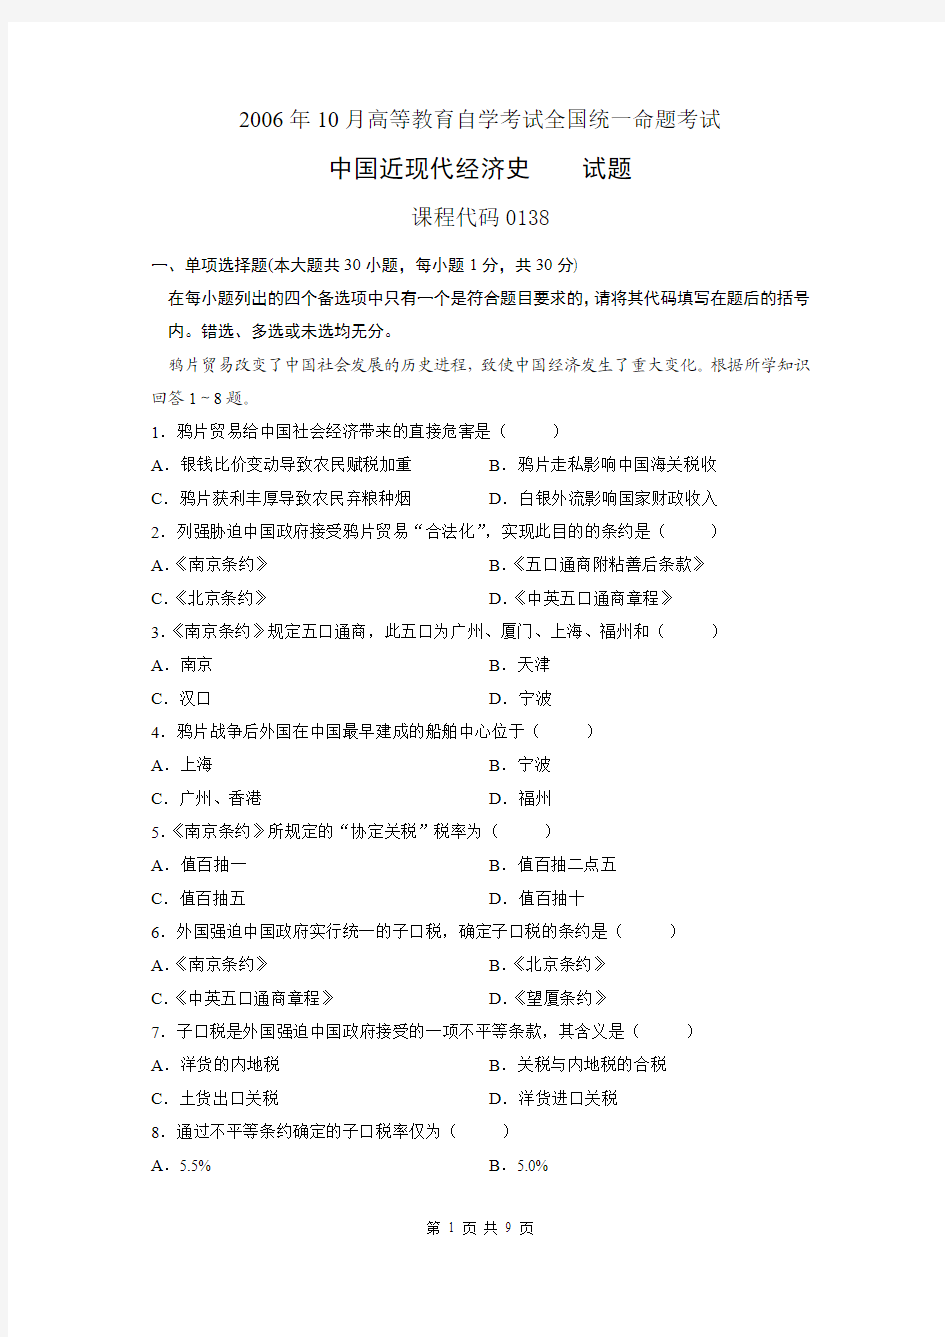 2006年10月高等教育自学考试 中国近现代经济史 课程代码0138  试题与答案